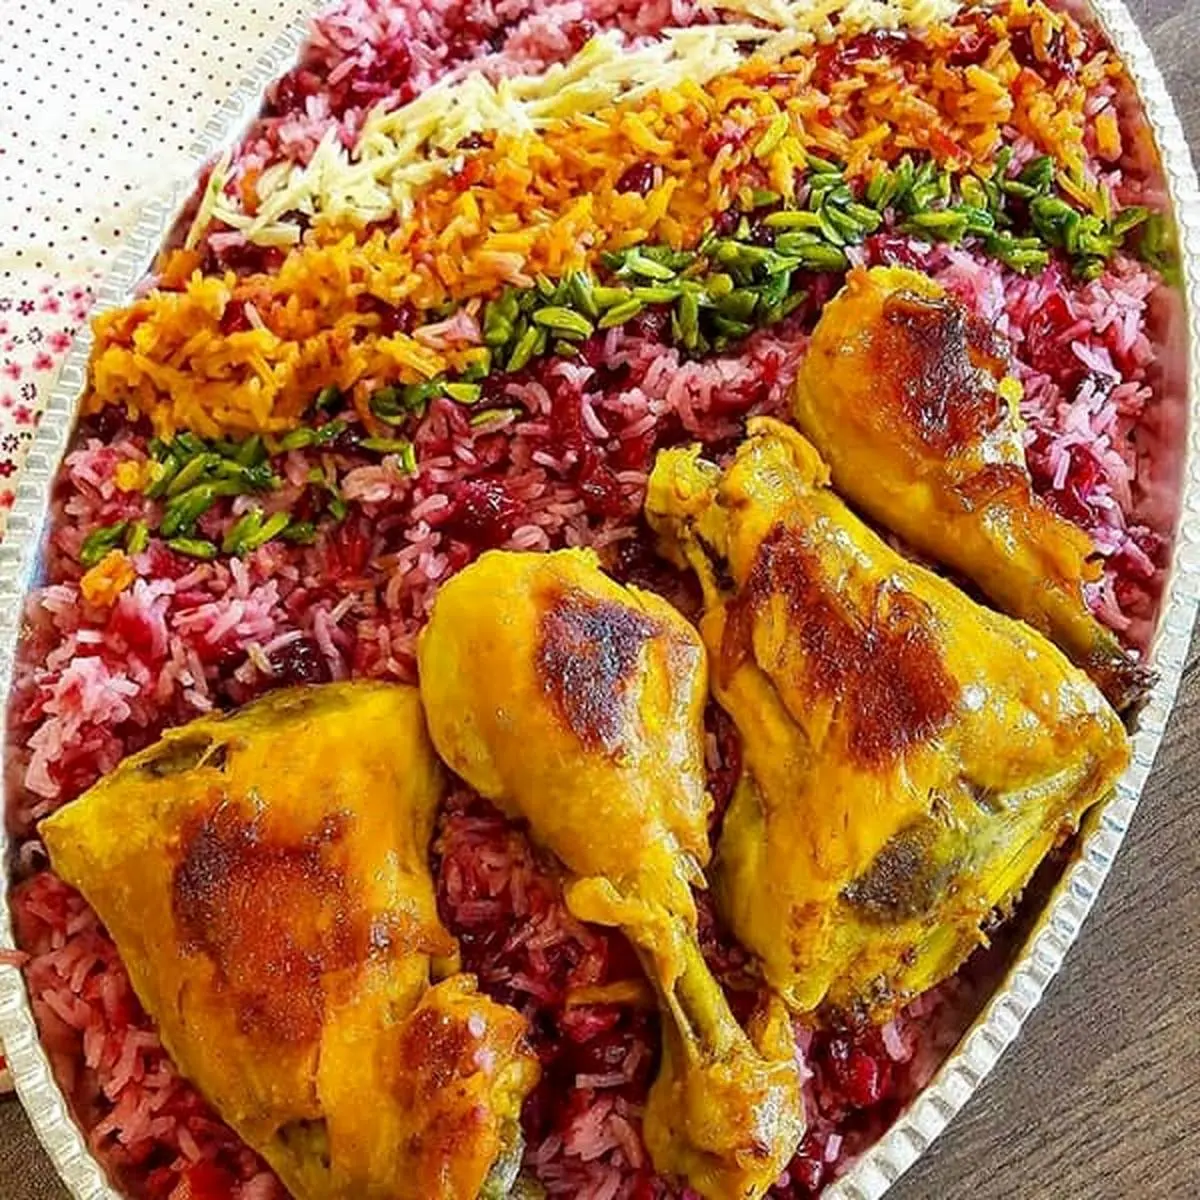 یک غذای اصیل ایرانی به لیست غذاهات اضافه کن | طرز تهیه آلبالو پلو به روش اصیل ایرانی 